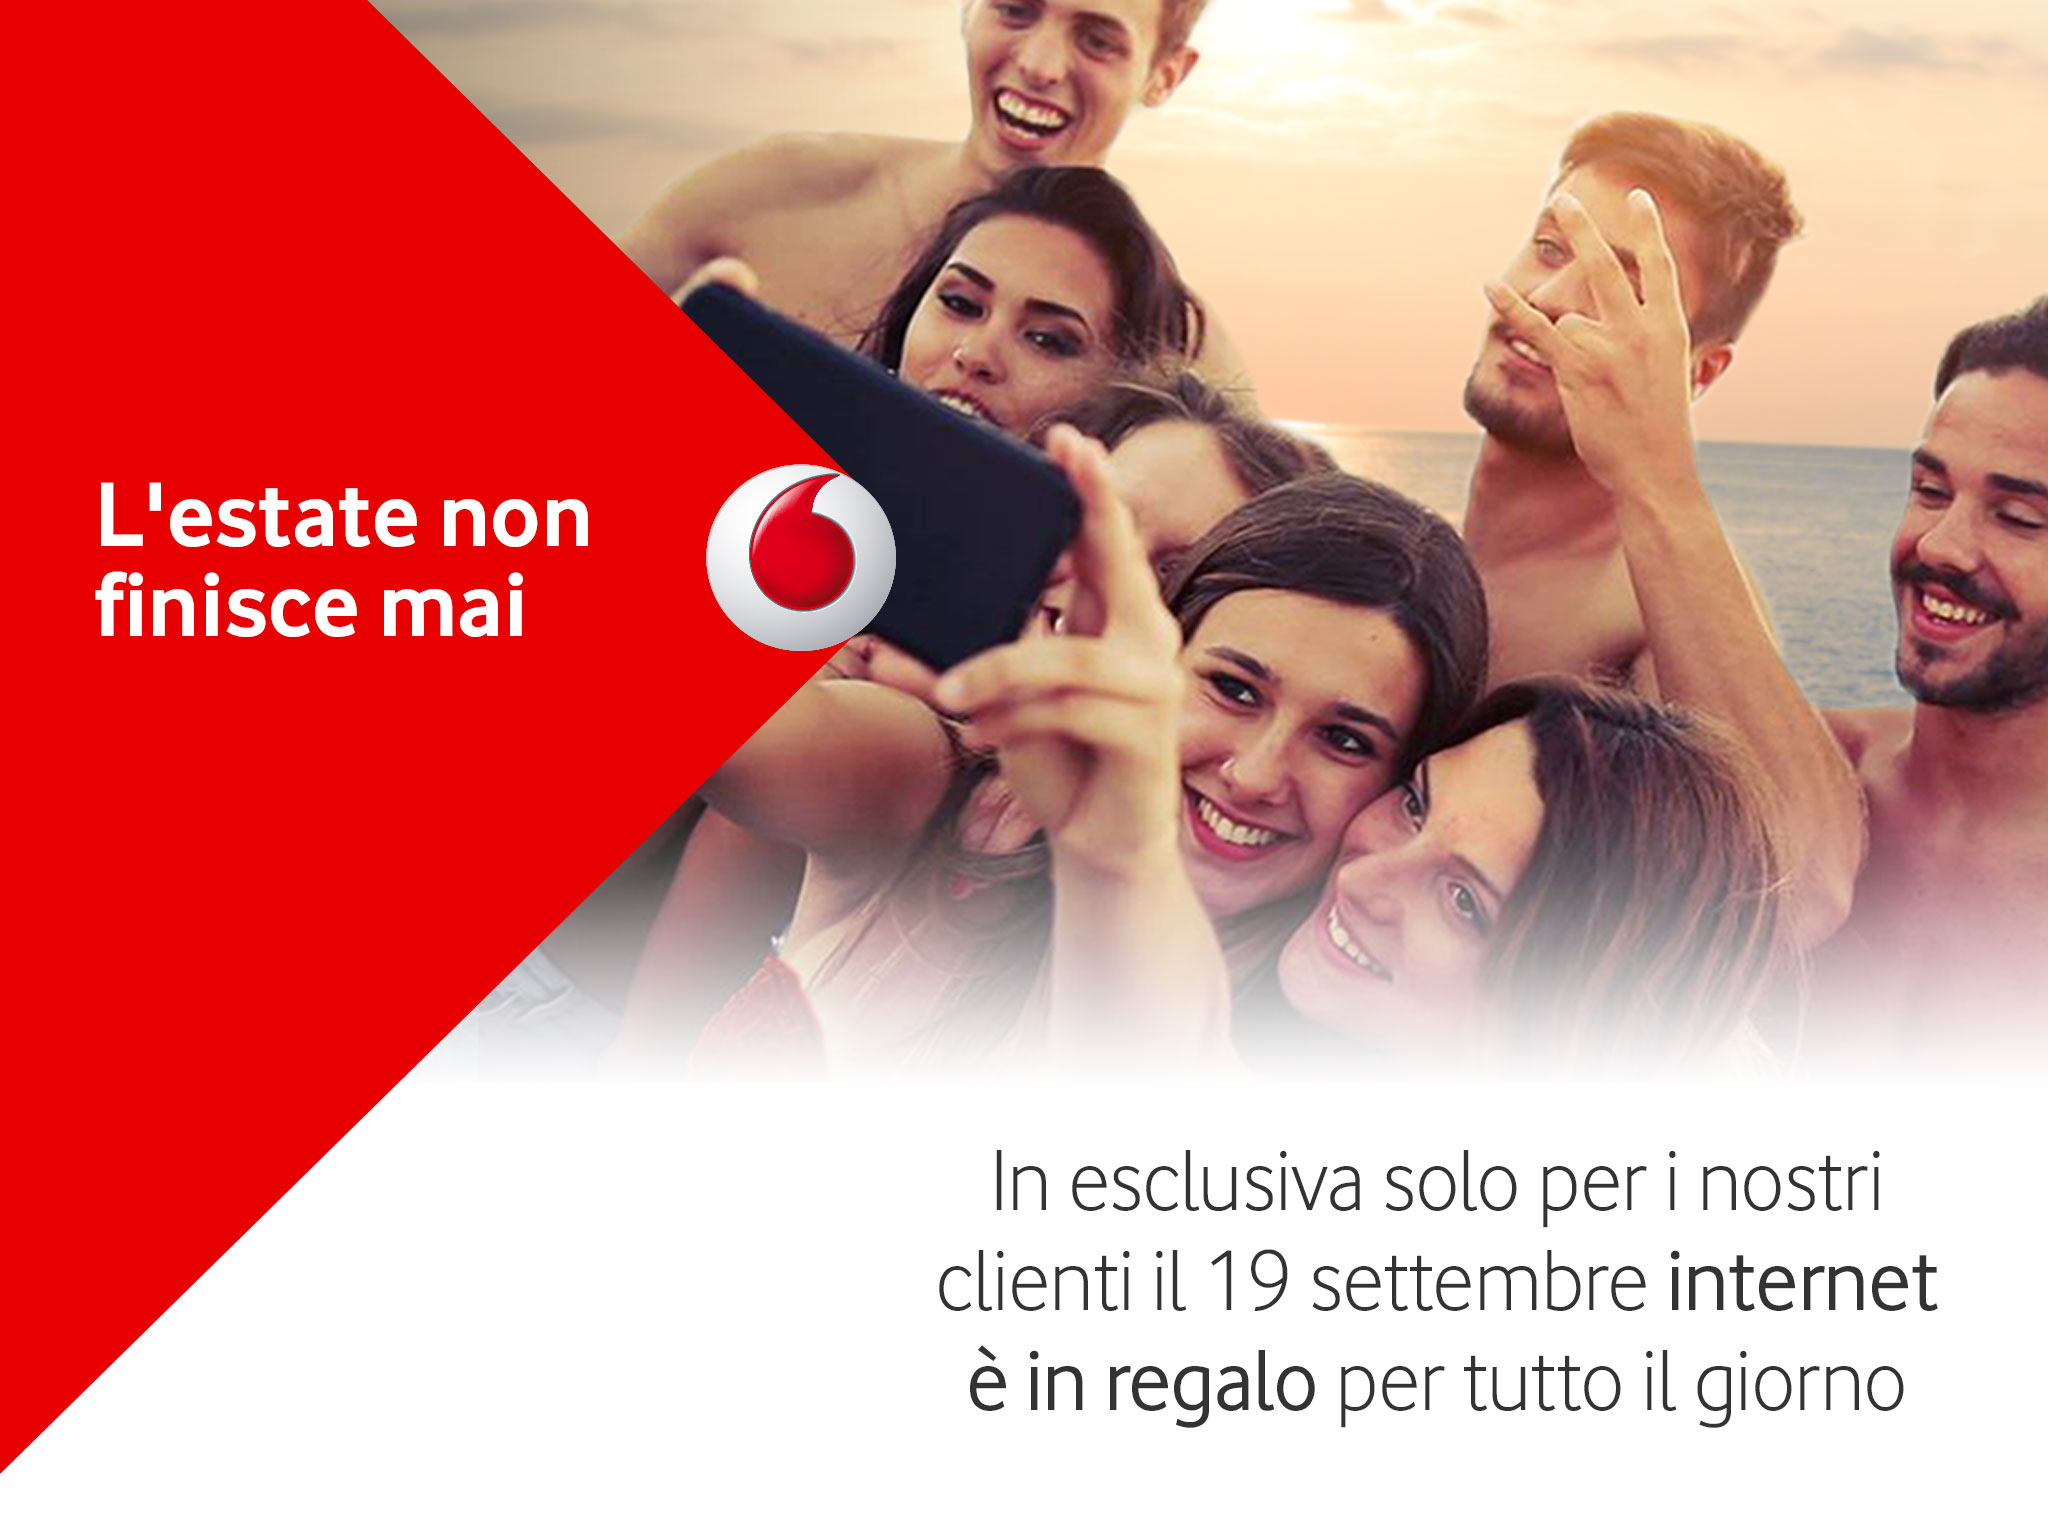 Con Vodafone l'estate non finisce mai: promo internet gratis 19 settembre 2015